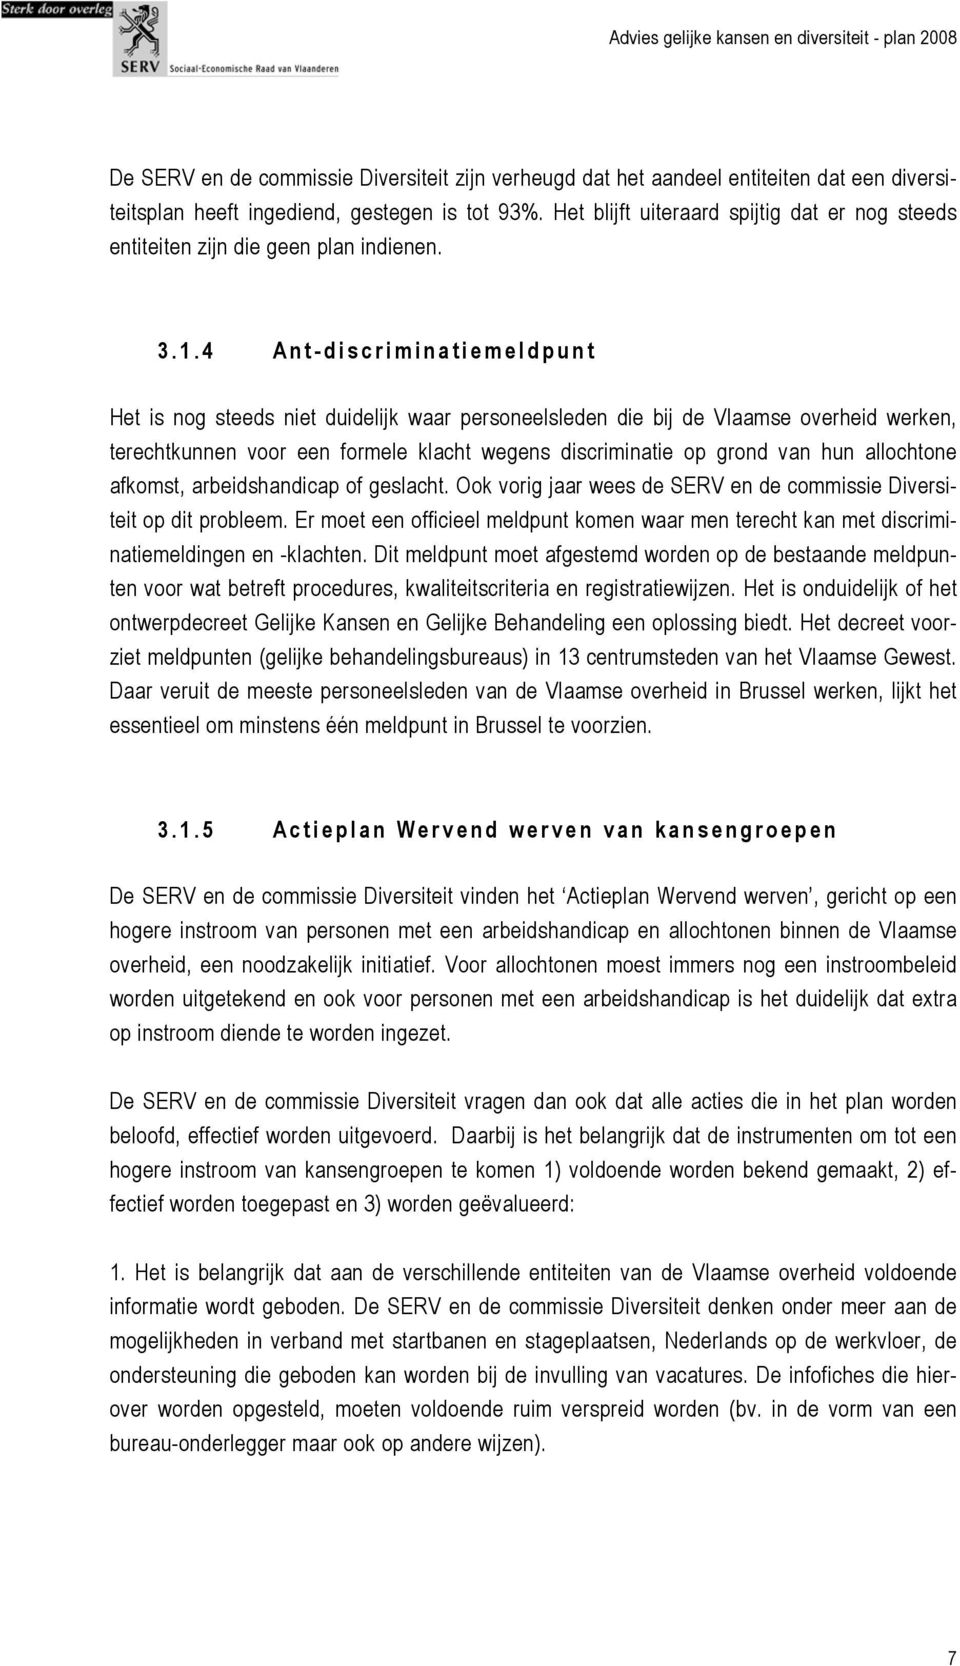 4 Ant-discriminatiemeldpunt Het is nog steeds niet duidelijk waar personeelsleden die bij de Vlaamse overheid werken, terechtkunnen voor een formele klacht wegens discriminatie op grond van hun